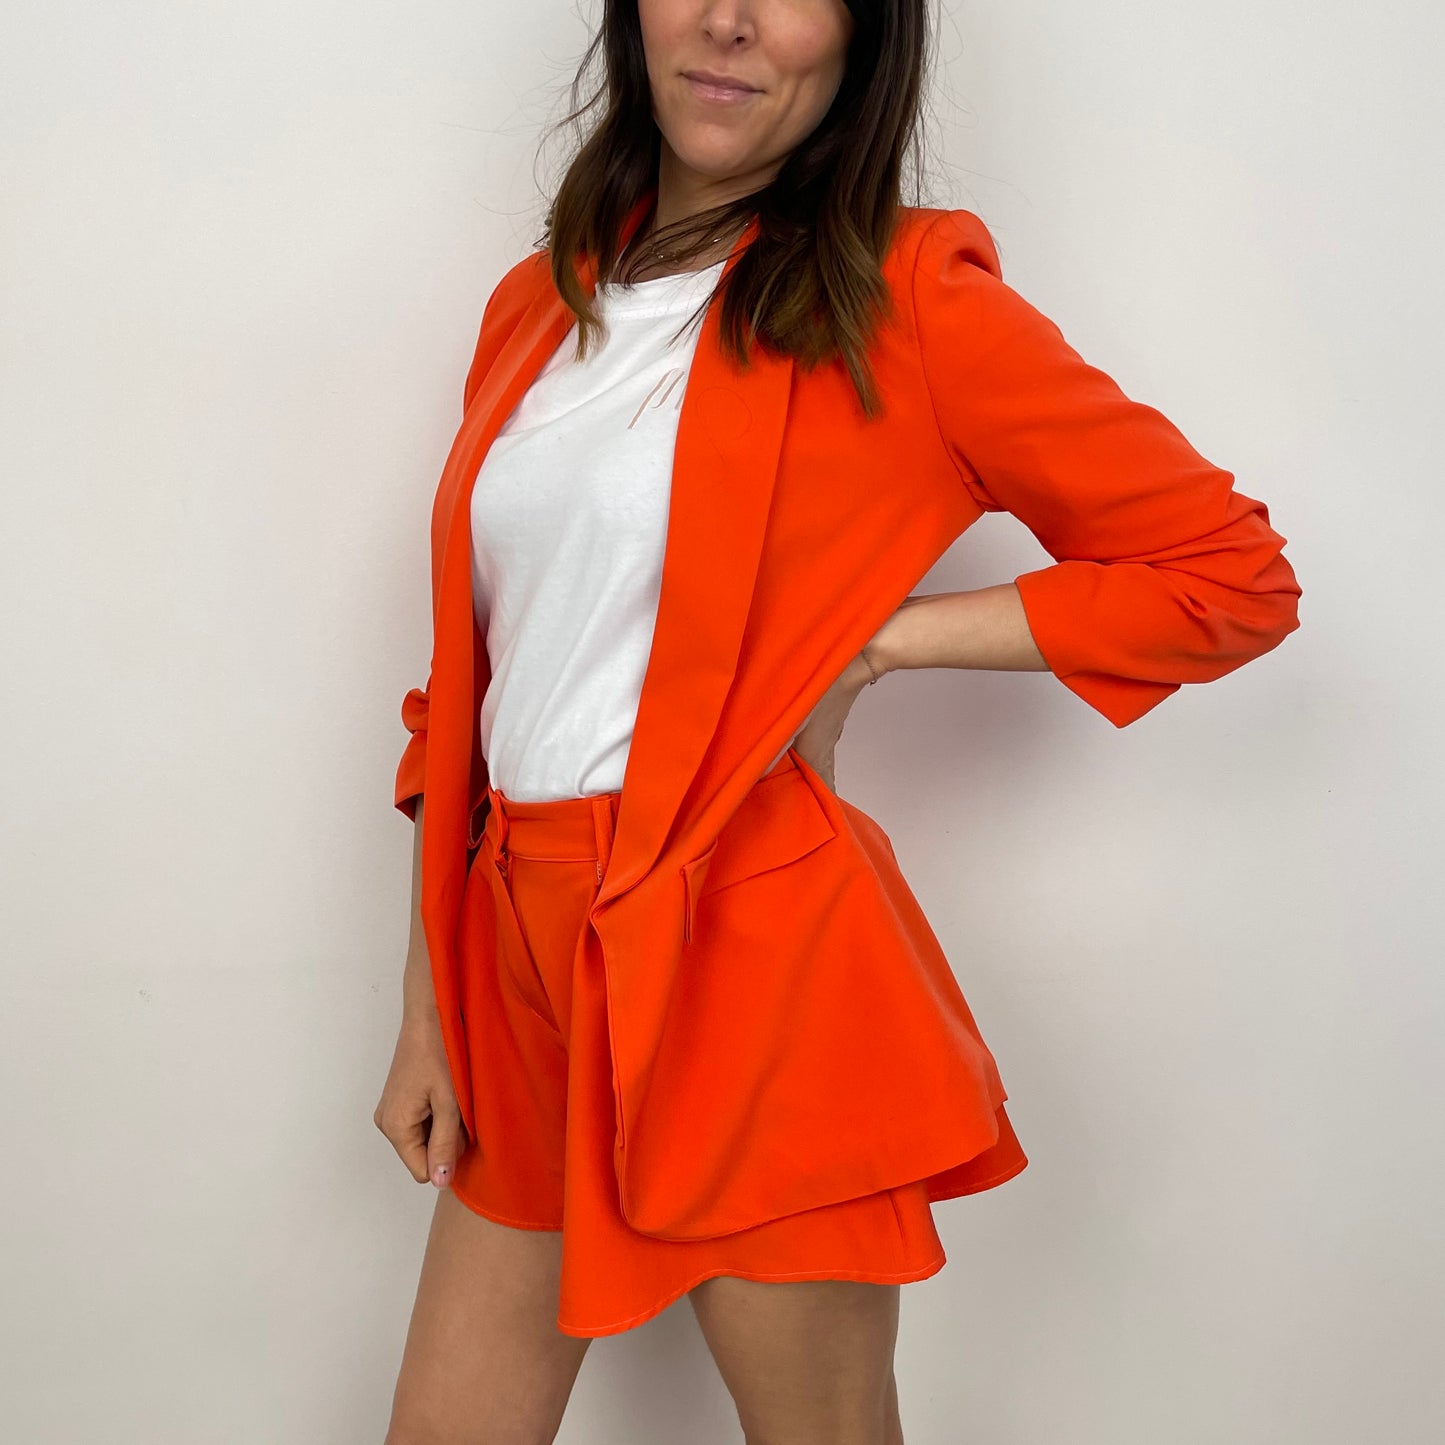 Pantaloncini effetto gonna arancione acceso Penelope Milano